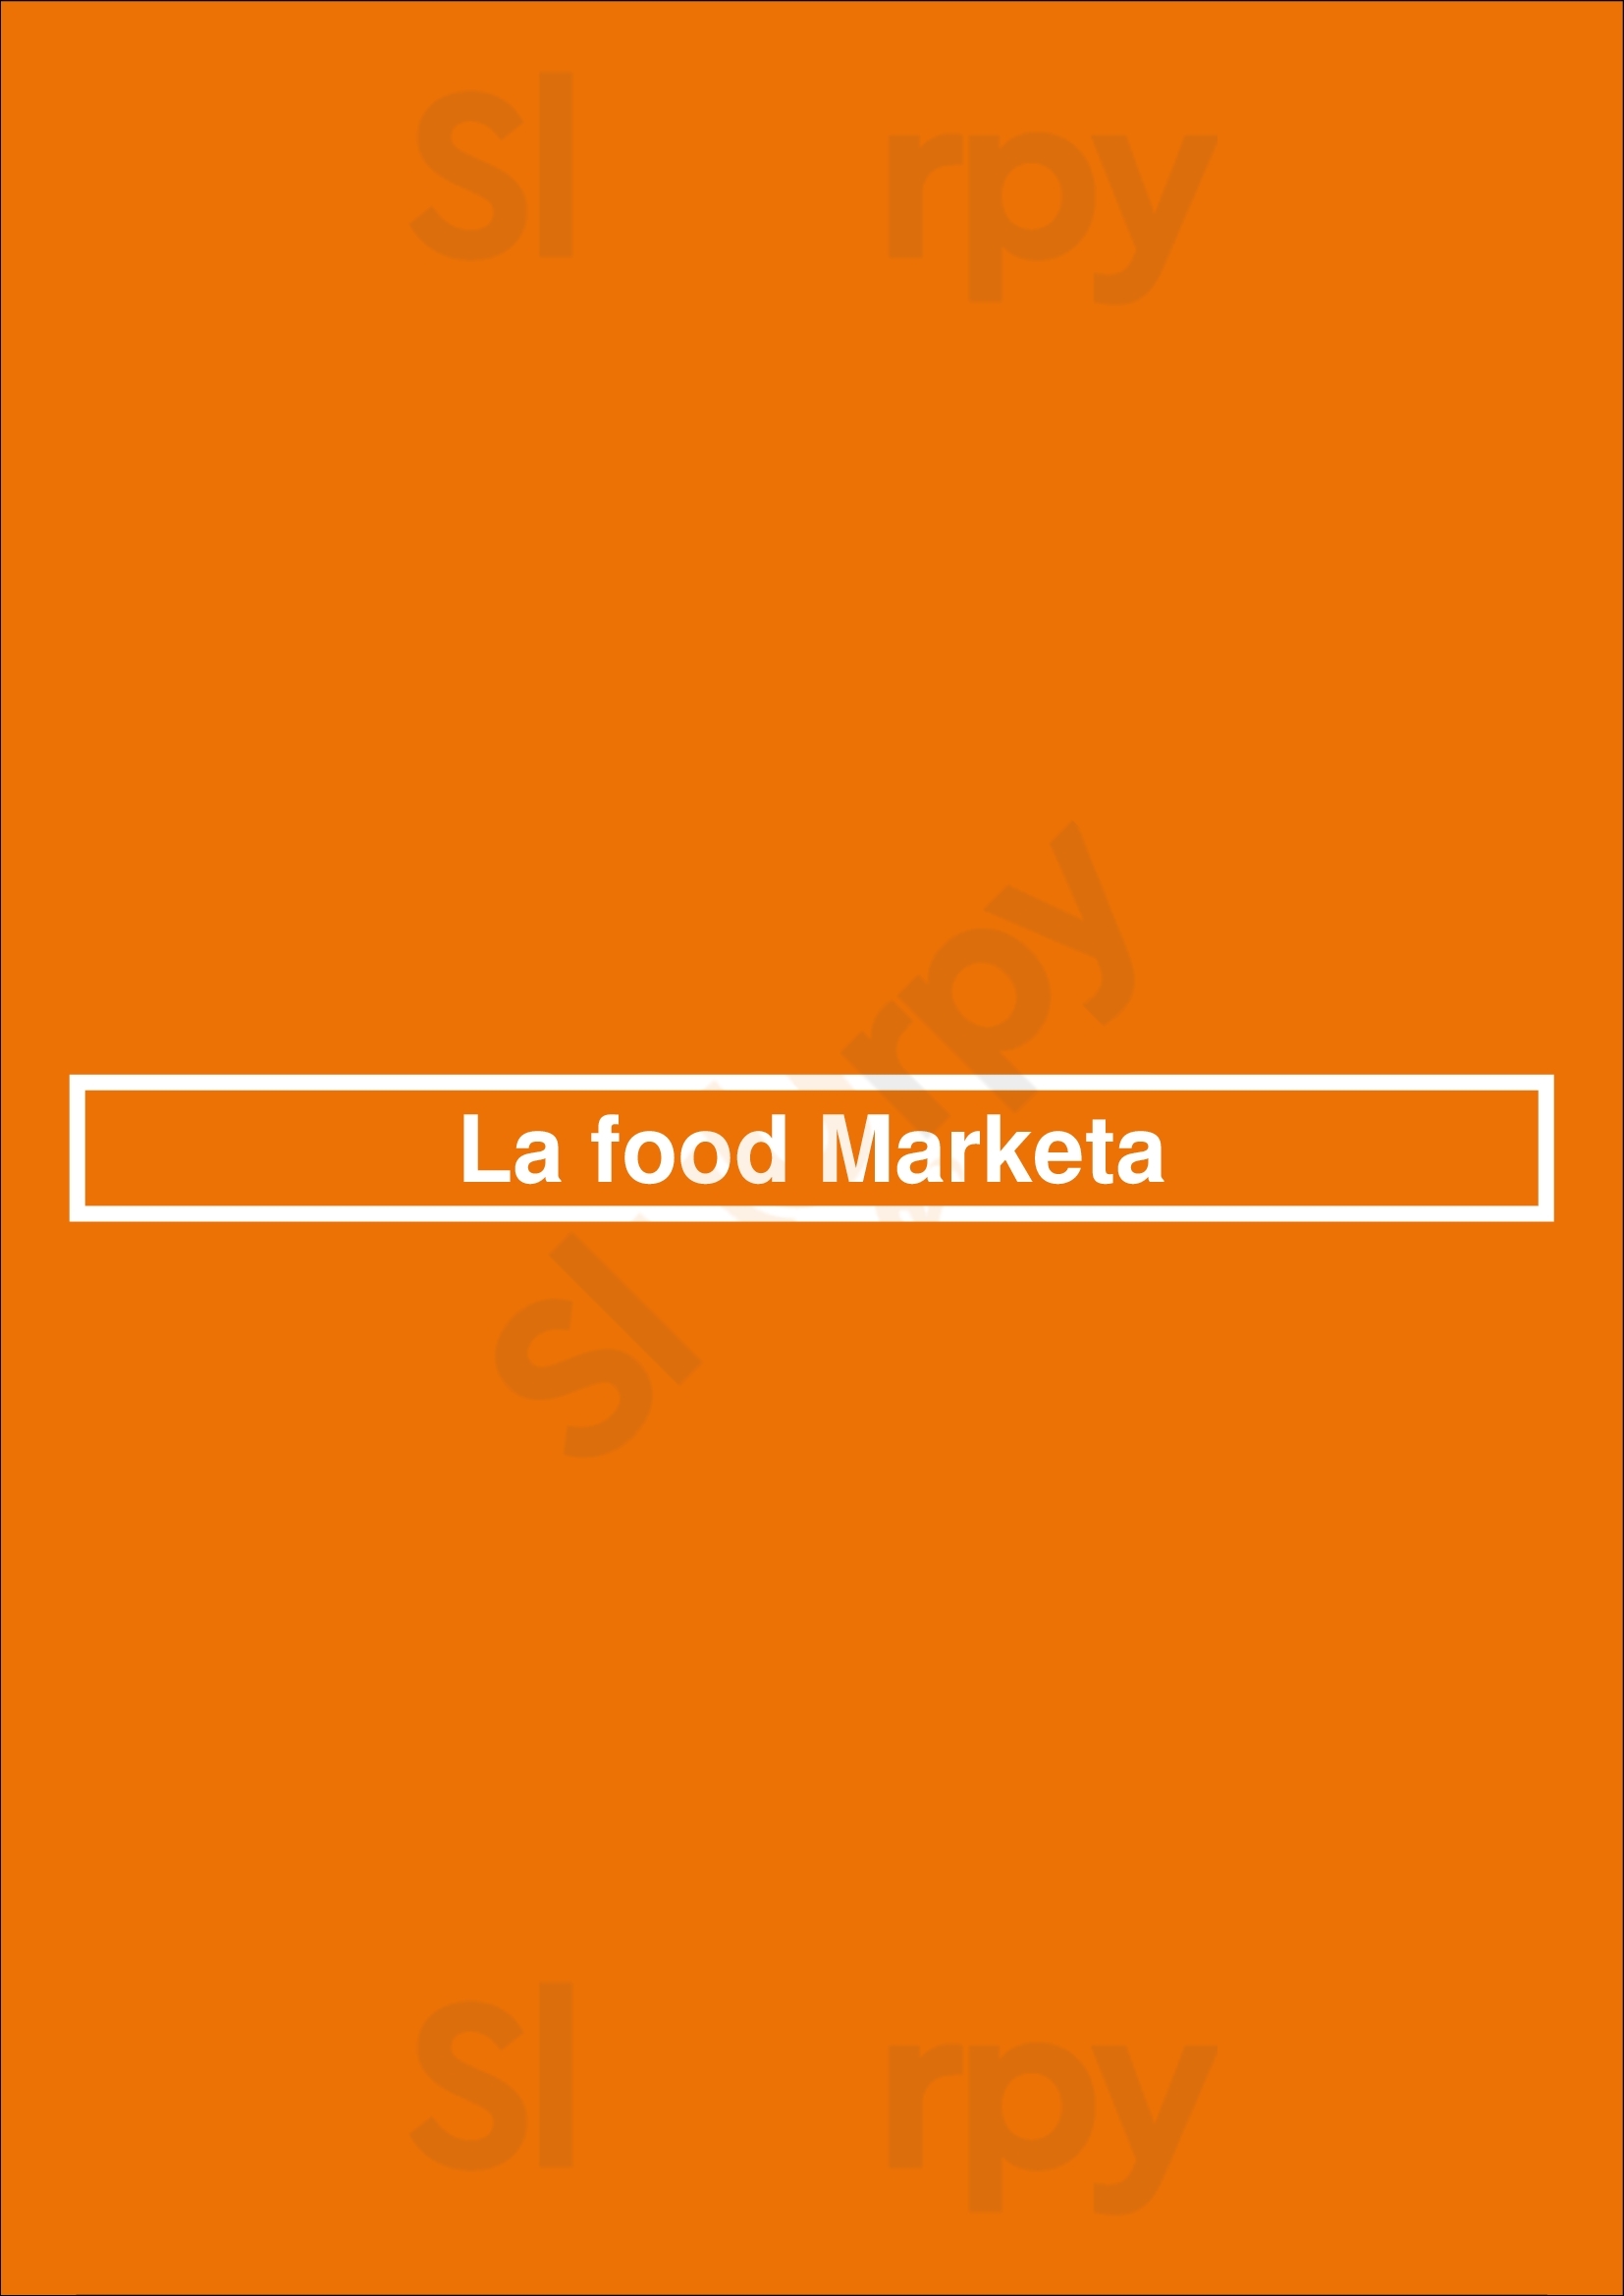 La Food Marketa Baltimore Menu - 1